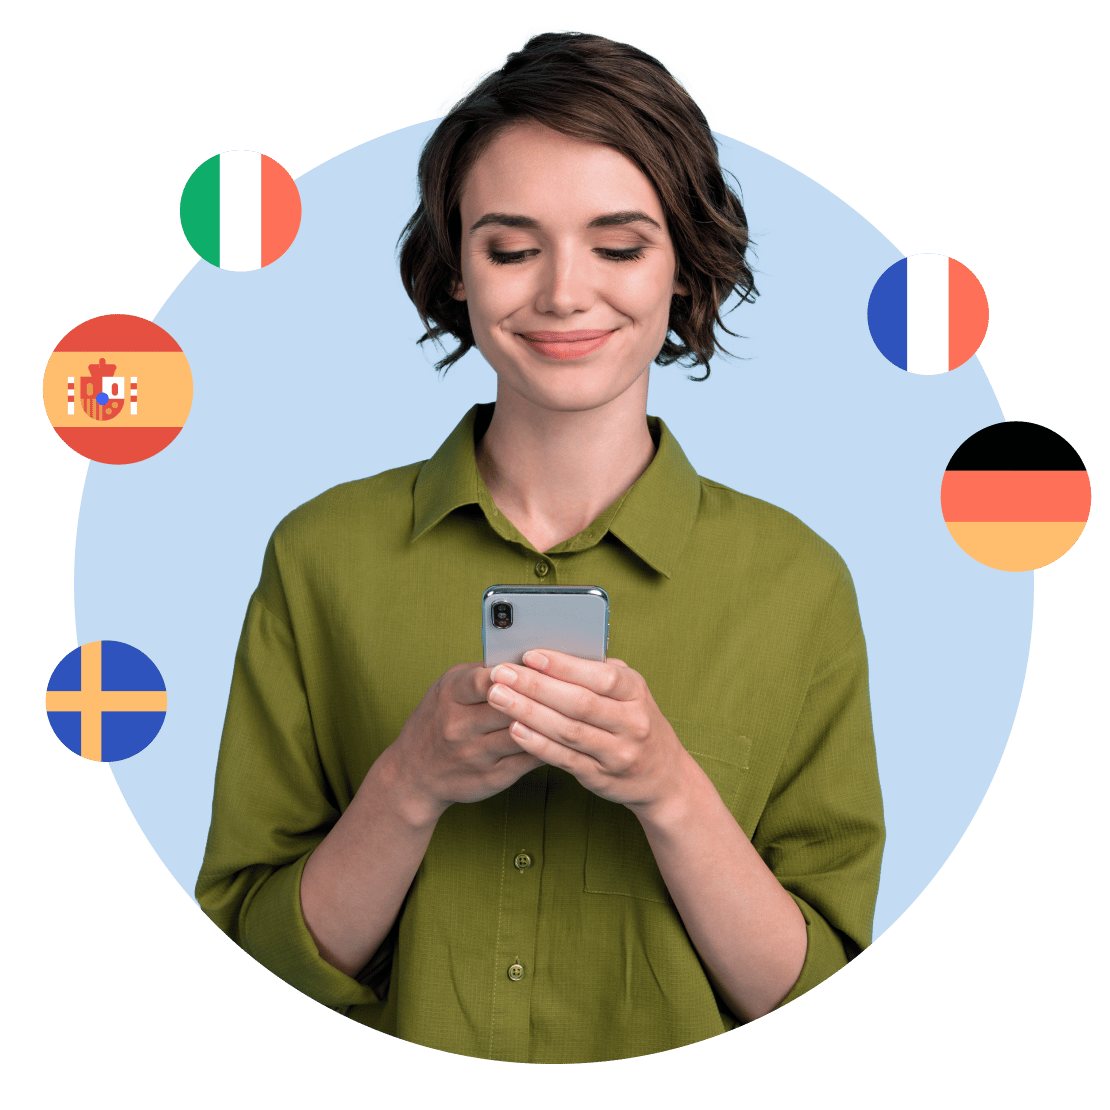 En kvinna som glatt lär sig flera språk på Duolingo med ökad integritet tack vare NordVPN.